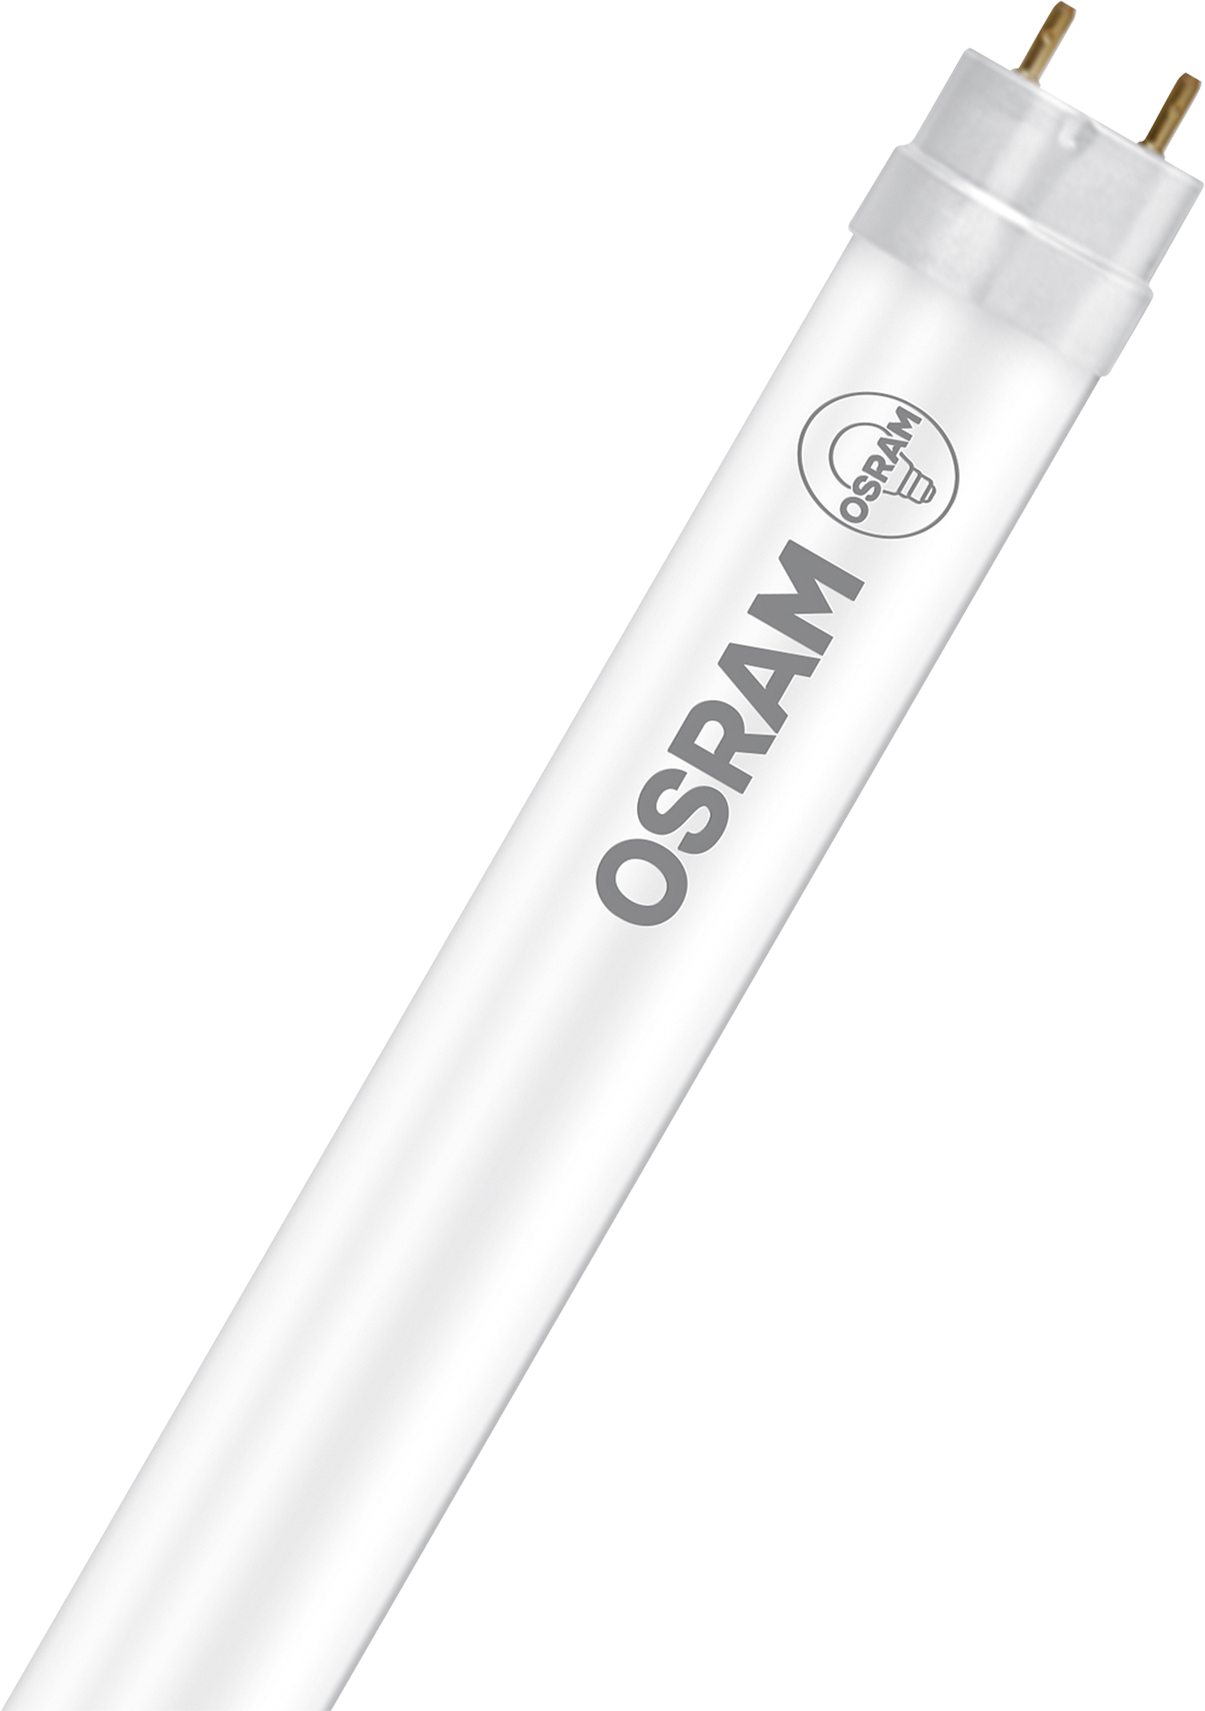 OSRAM Leuchtstofflampe T8 G13, 18W, 1350lm, dimmbar, warmweiss - Lampen, Leuchten